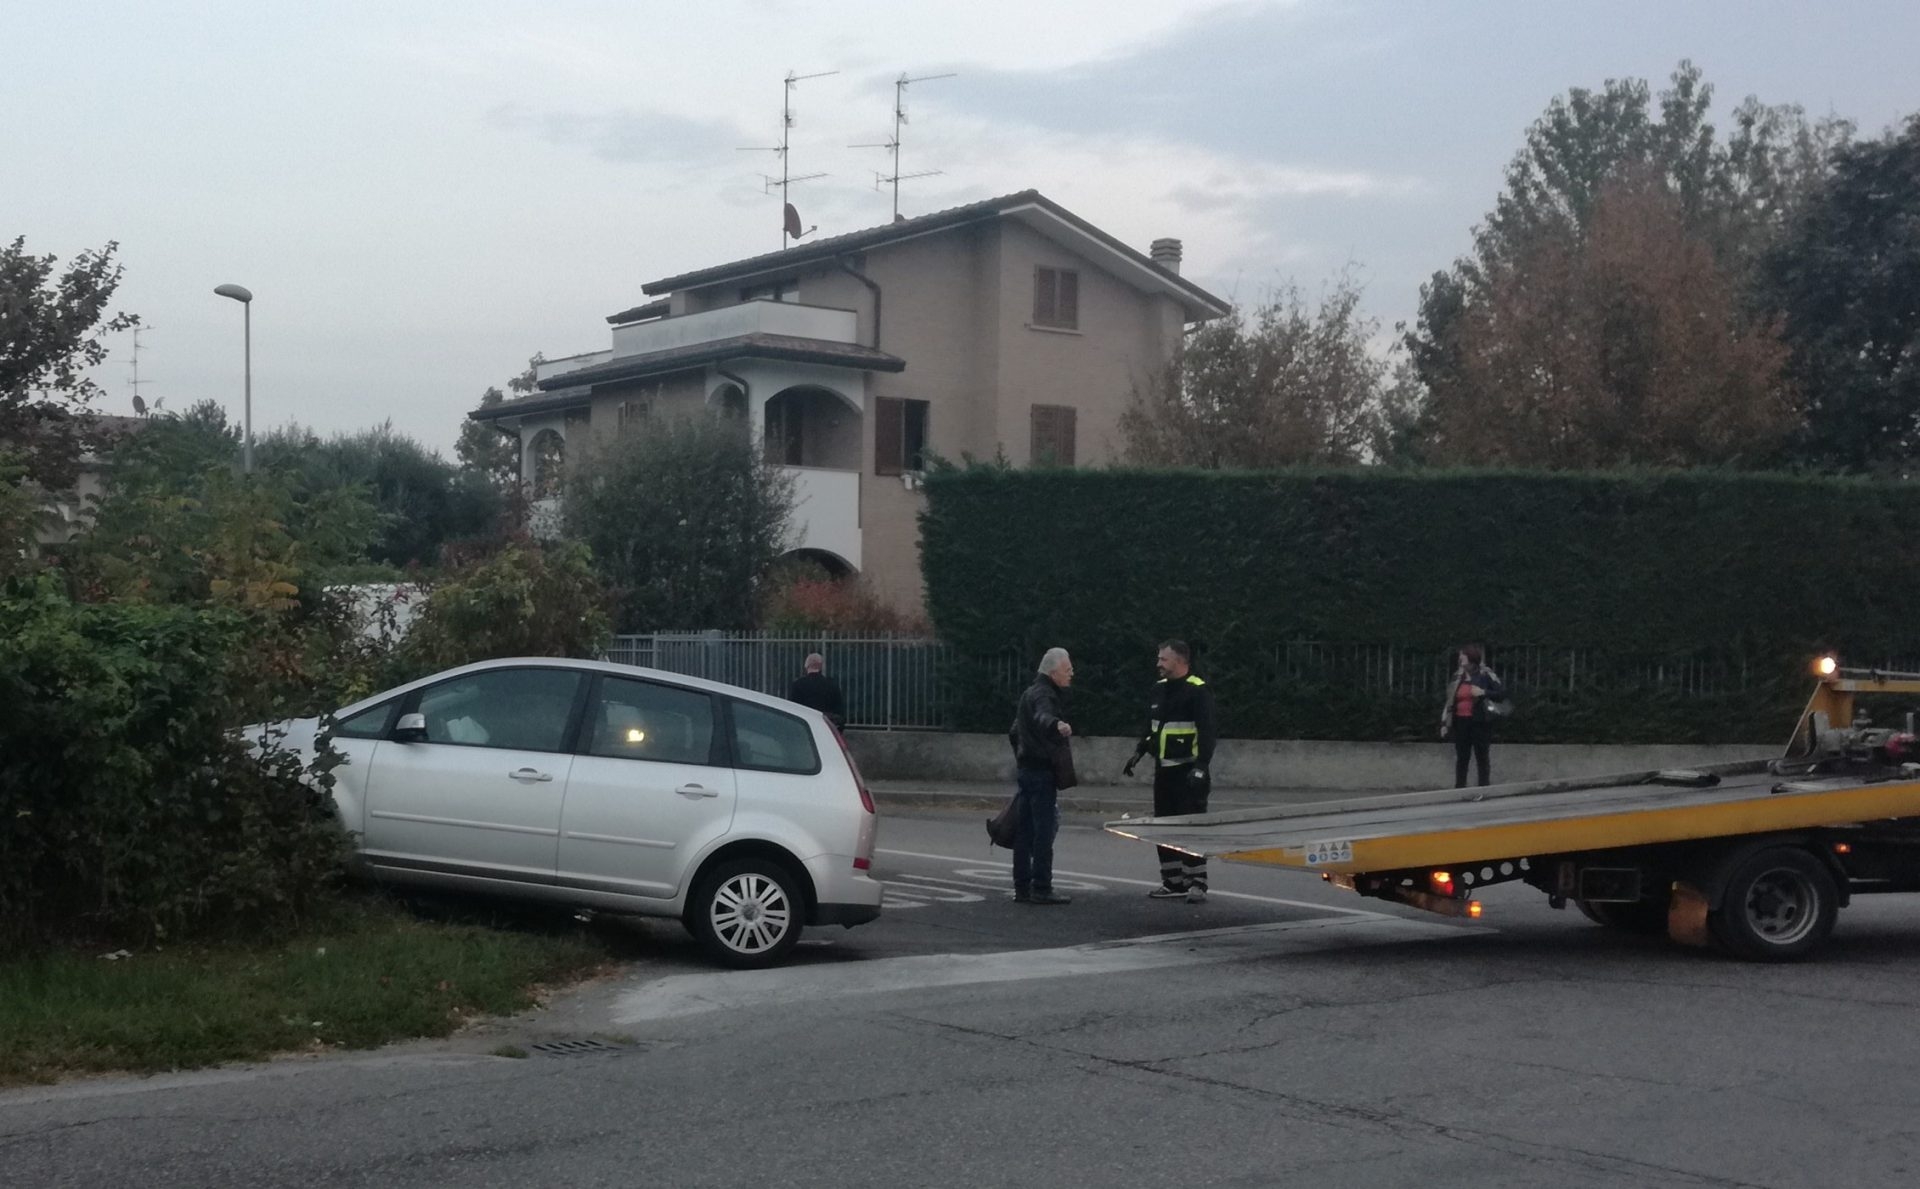 La scena dell'incidente di via Vignazzola